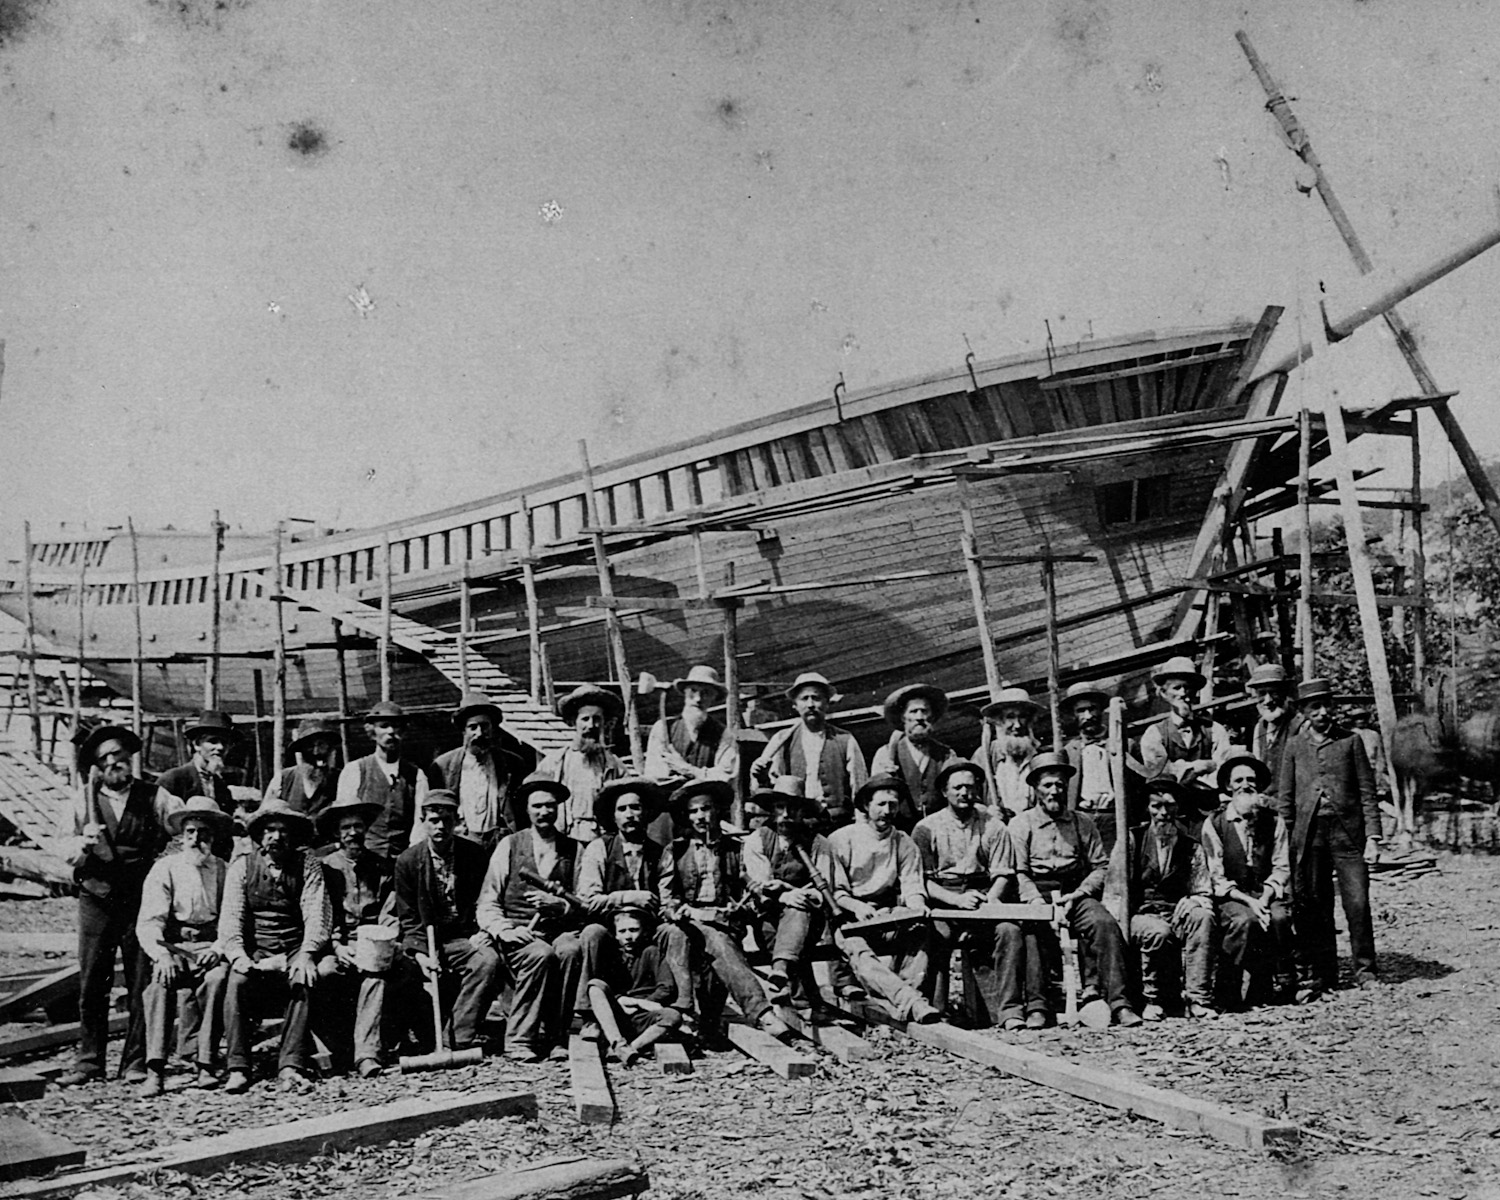 Original build crew, 1871